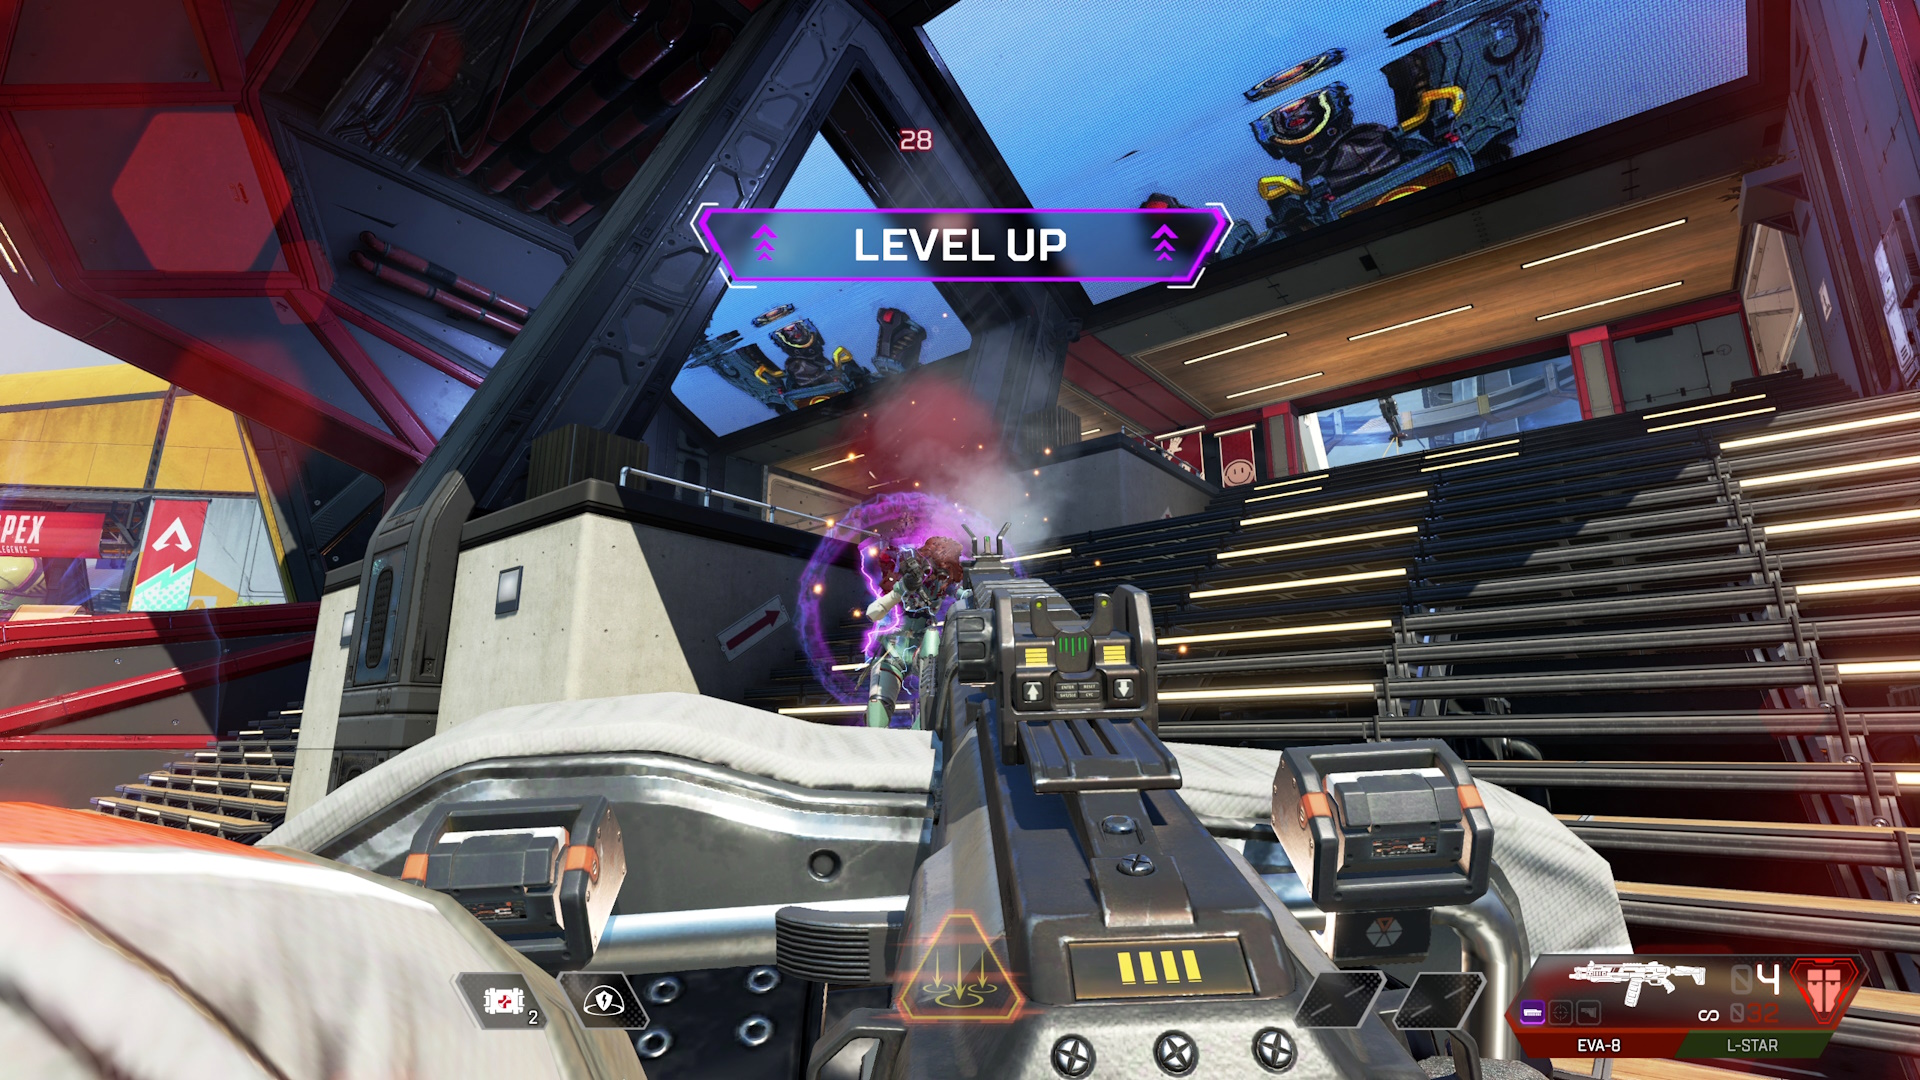 Capture d'écran d'Apex Legends montrant quelqu'un qui monte de niveau dans le jeu